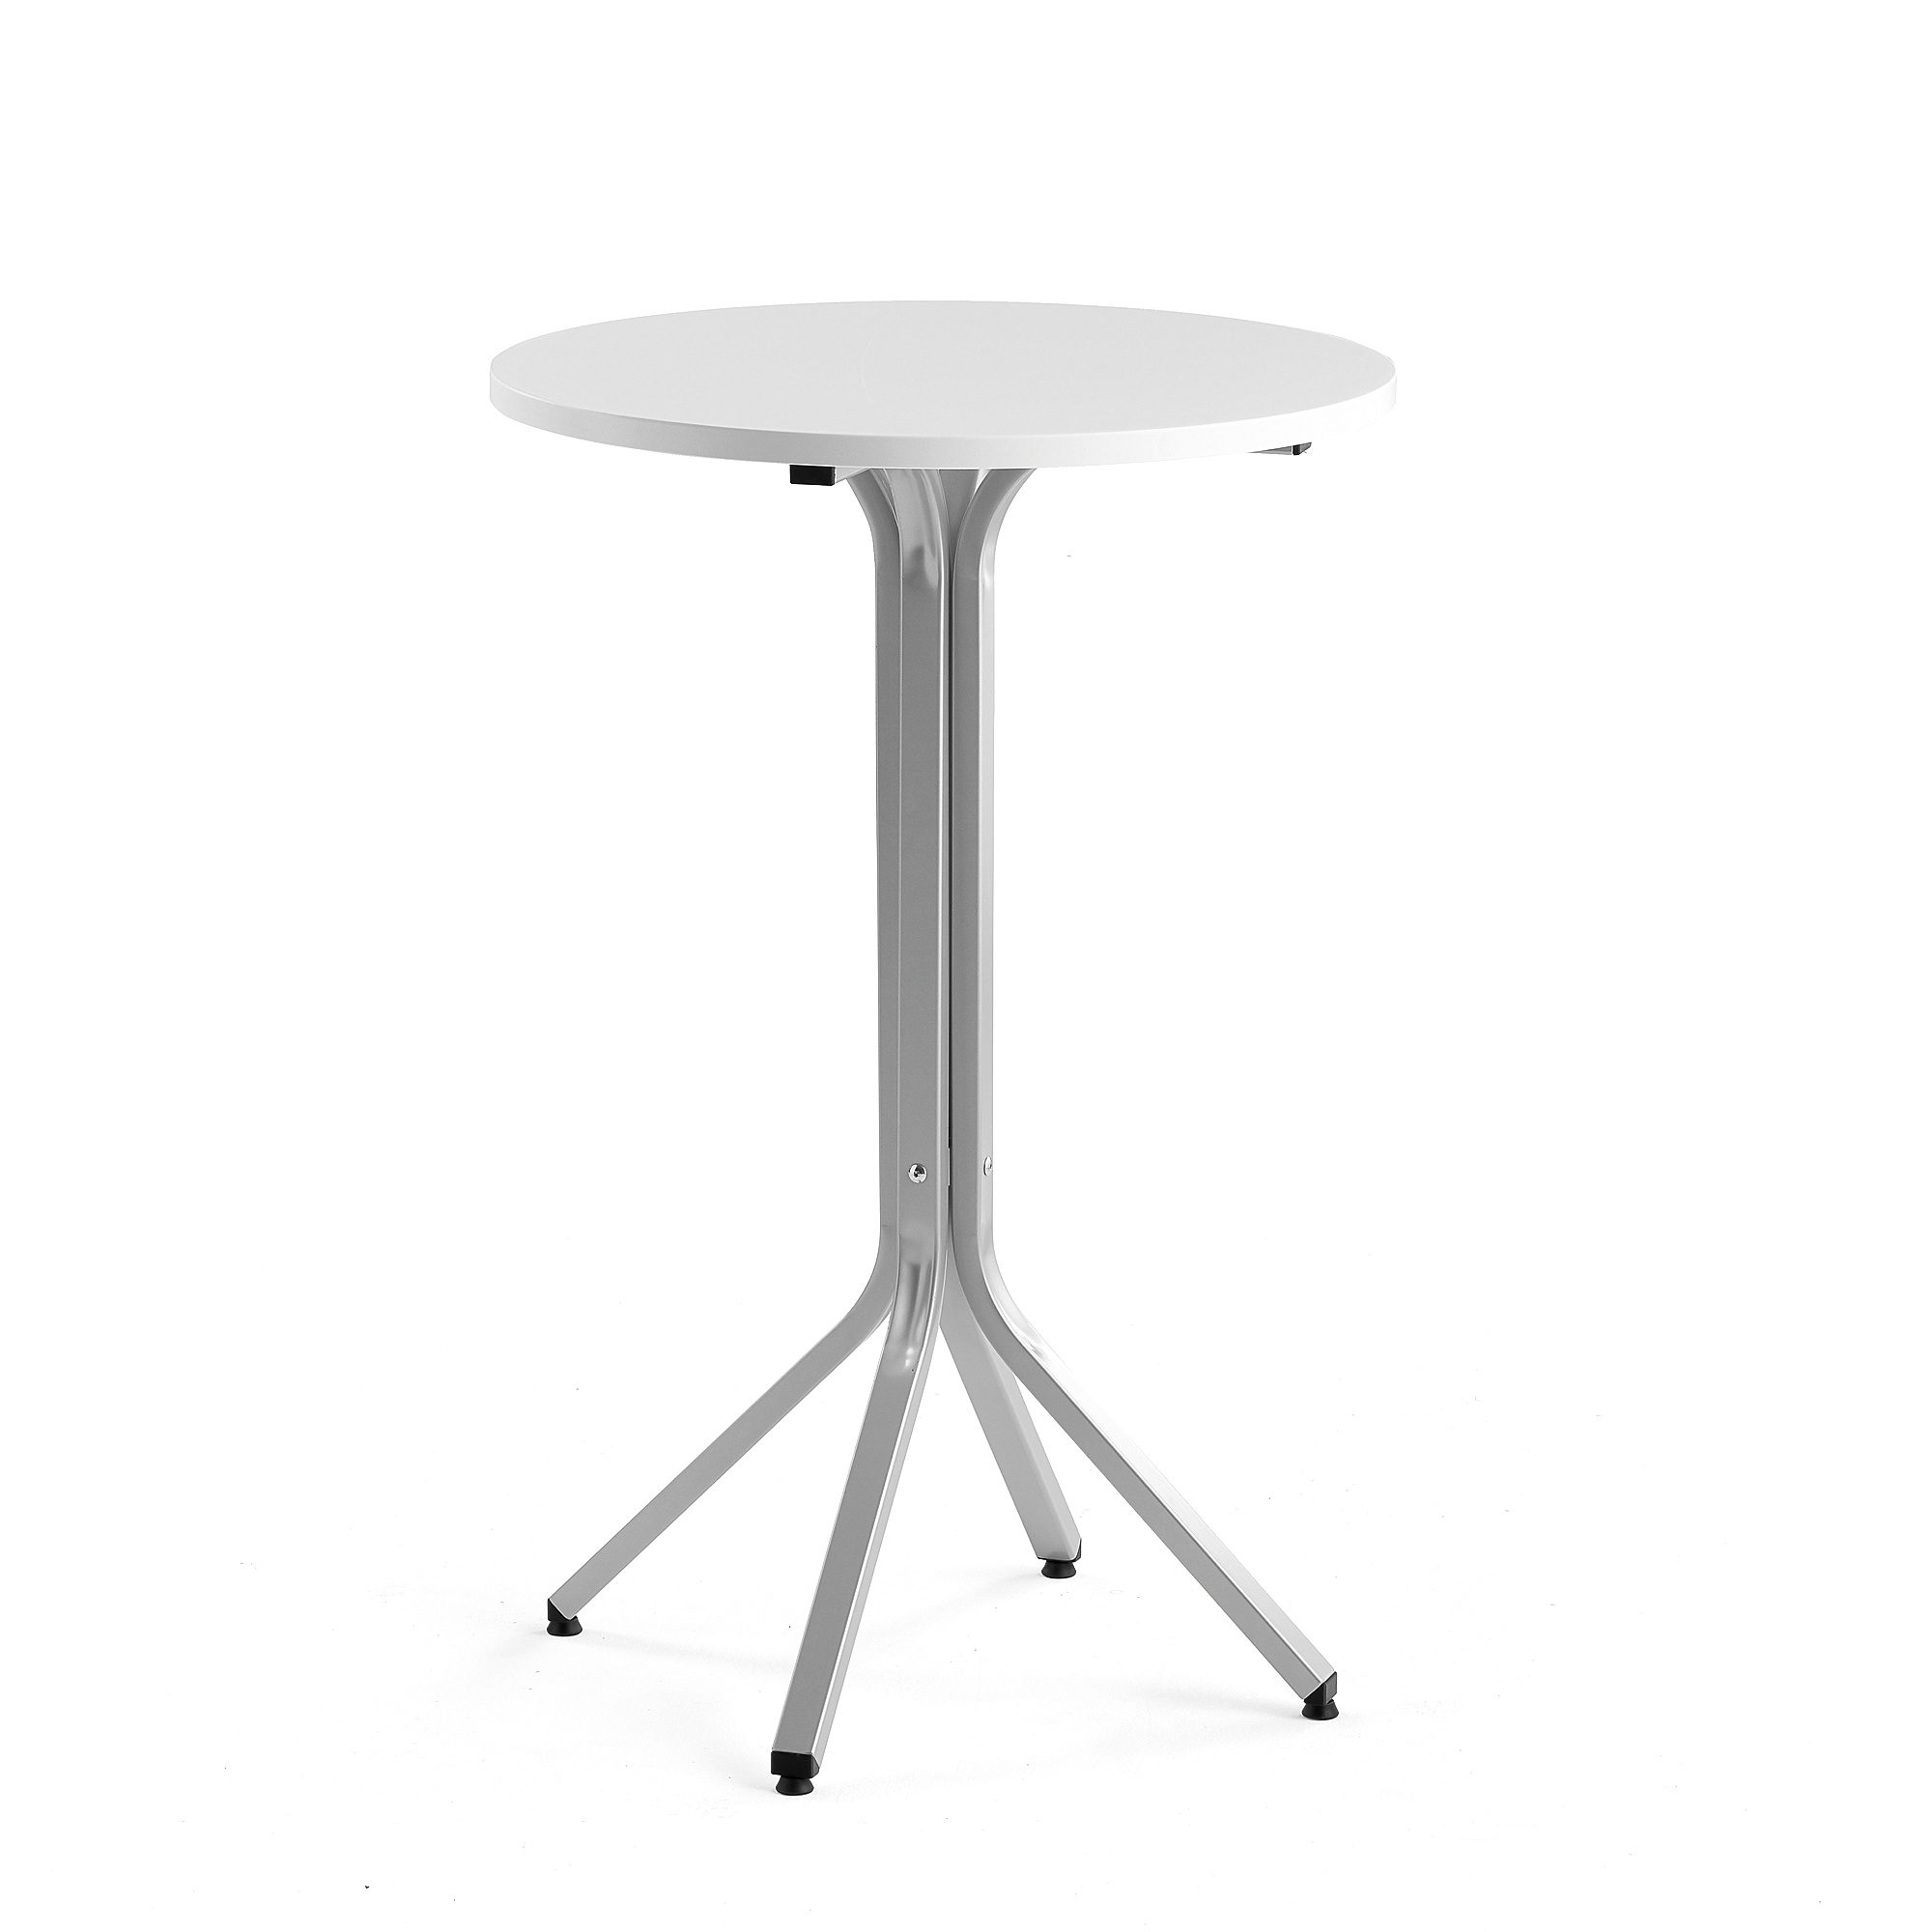 Stůl VARIOUS, Ø700 mm, výška 1050 mm, stříbrná, bílá